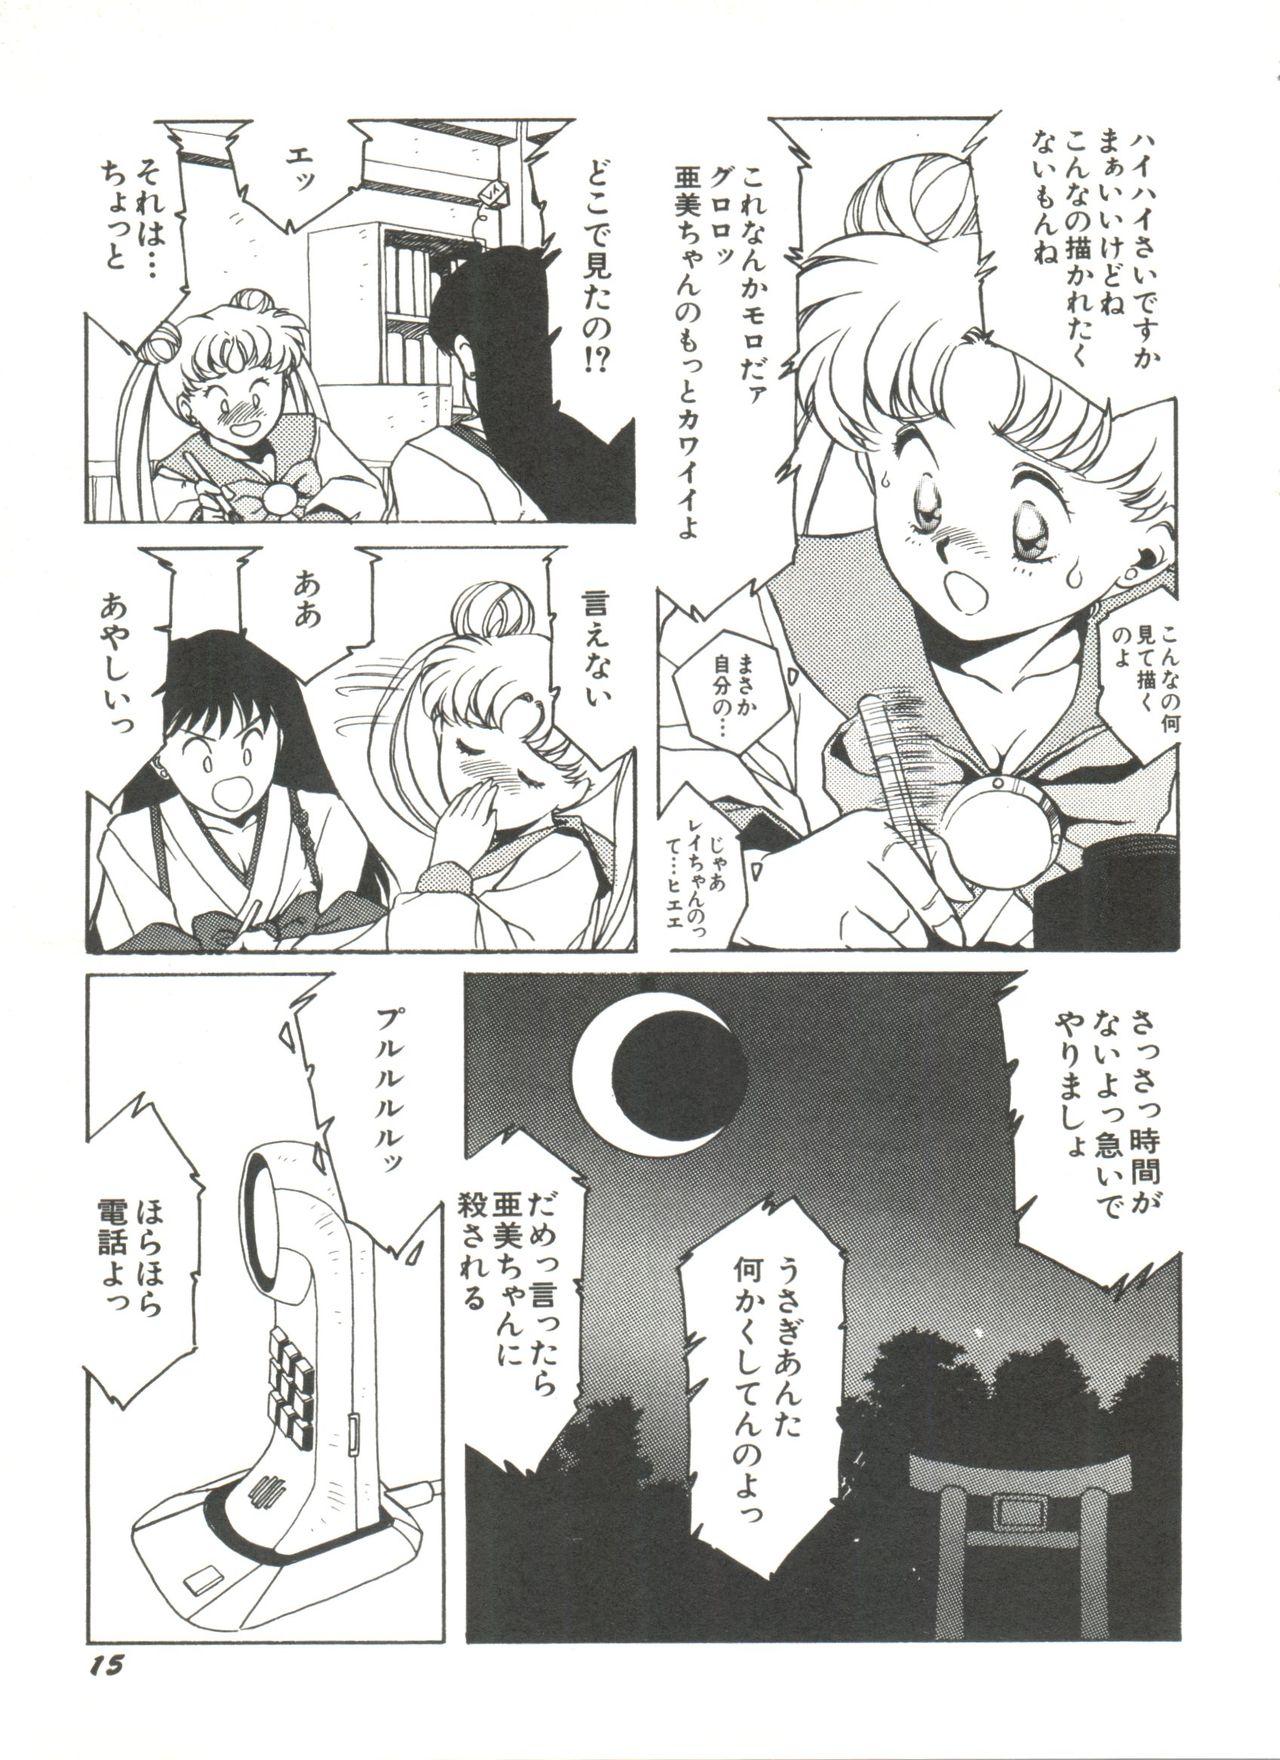 Bishoujo Doujinshi Anthology 2 - Moon Paradise 1 Tsuki no Rakuen 17